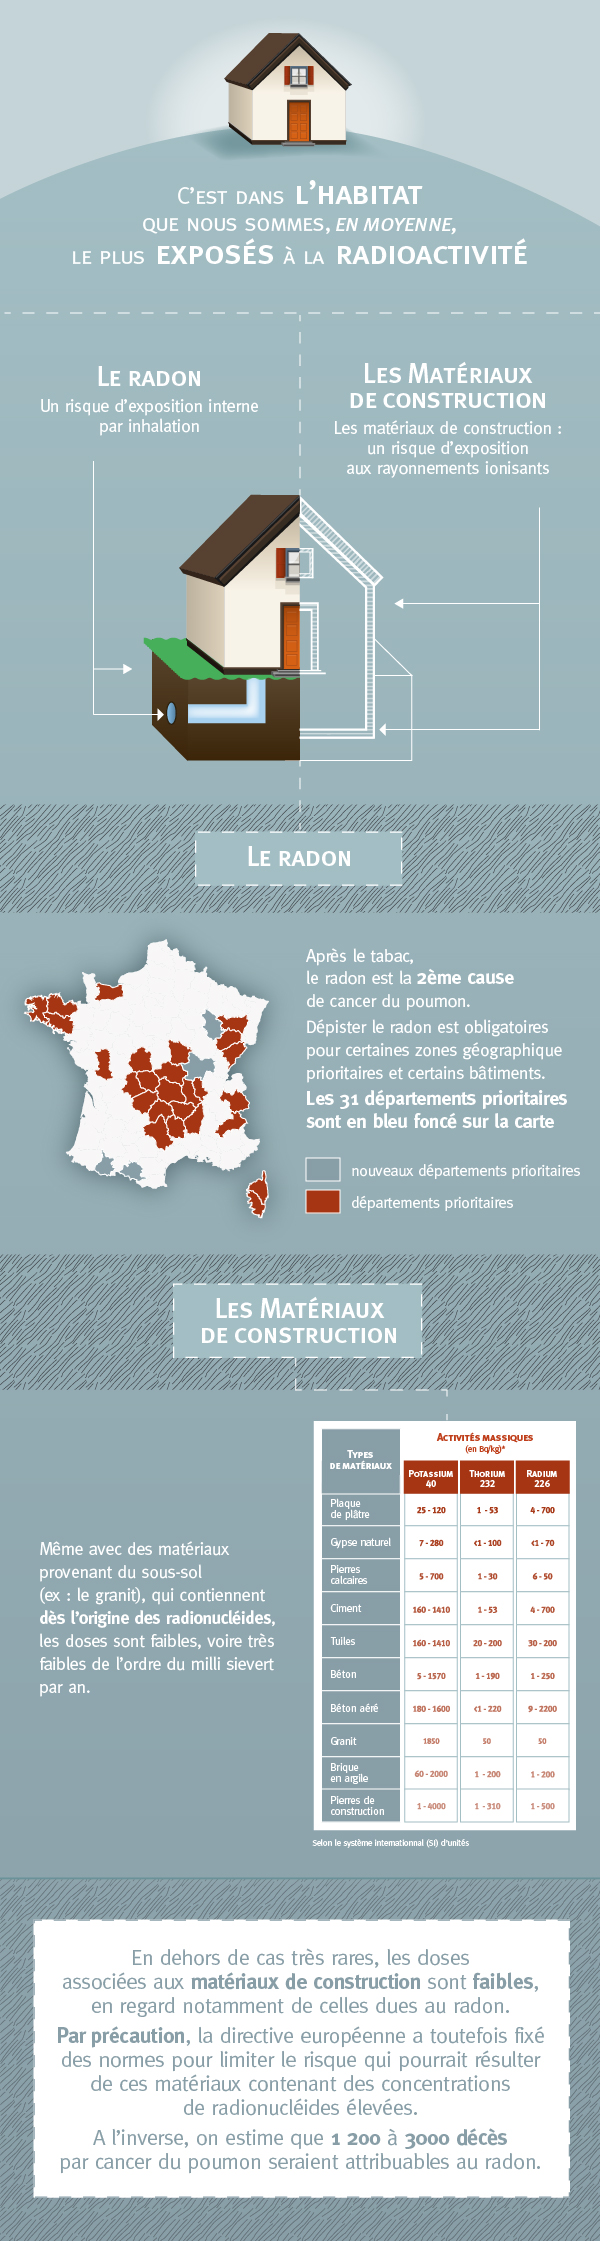 Infographie : l'exposition à la radioactivité dans la maison